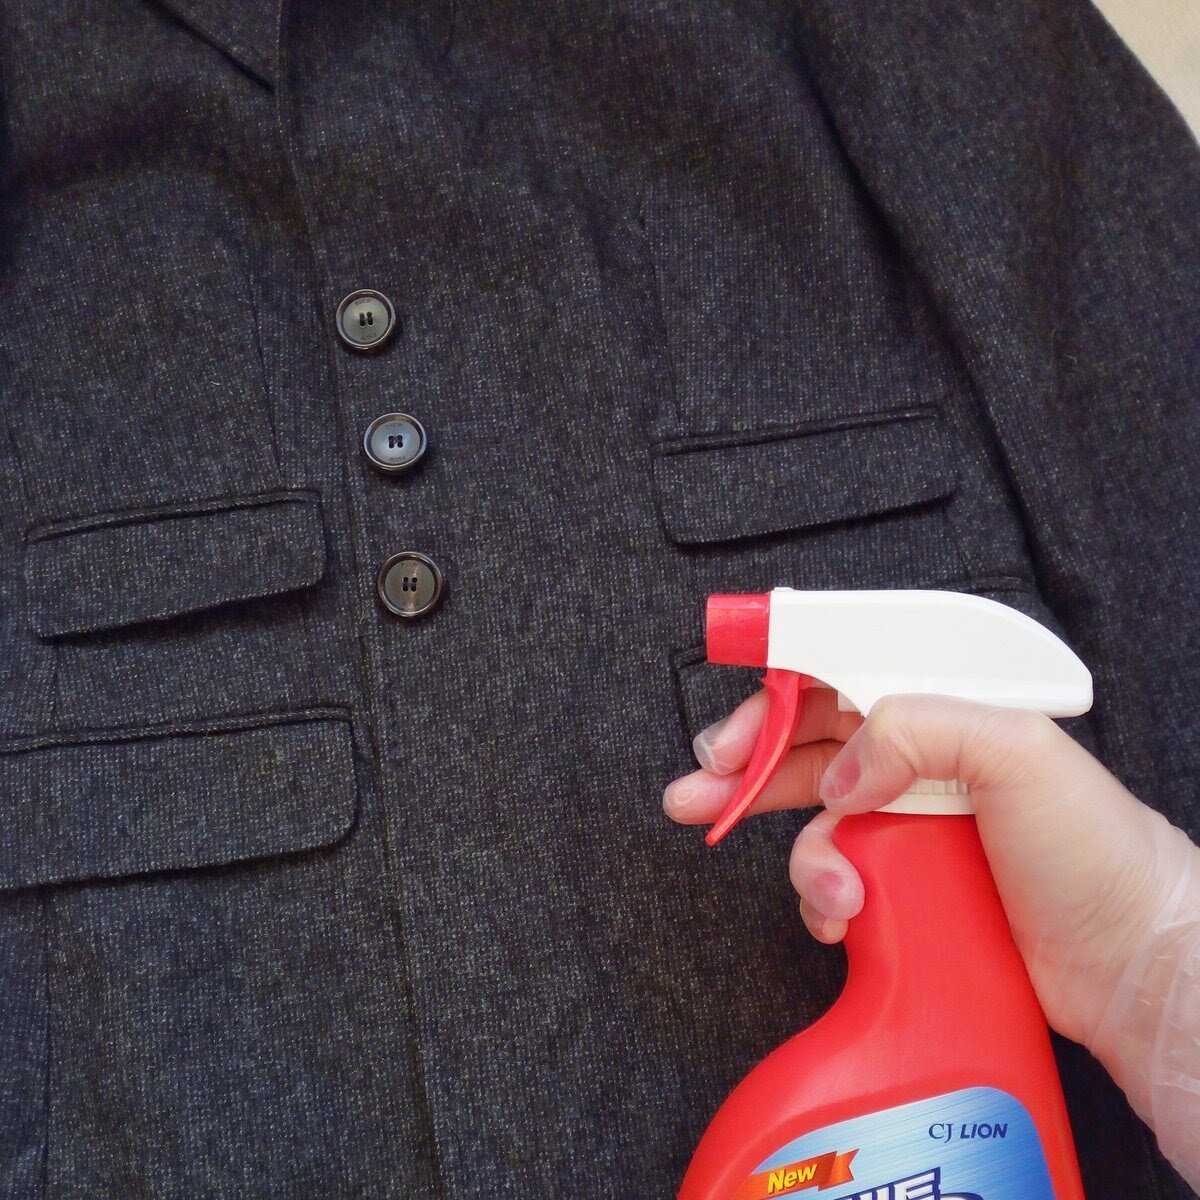 Как самому почистить дома пальто, без стирки и химчистки Как почистить и освежить пальто из разных материалов: драп, кашемир, твид, шерсть и др - сухая чистка пальто в домашних условиях